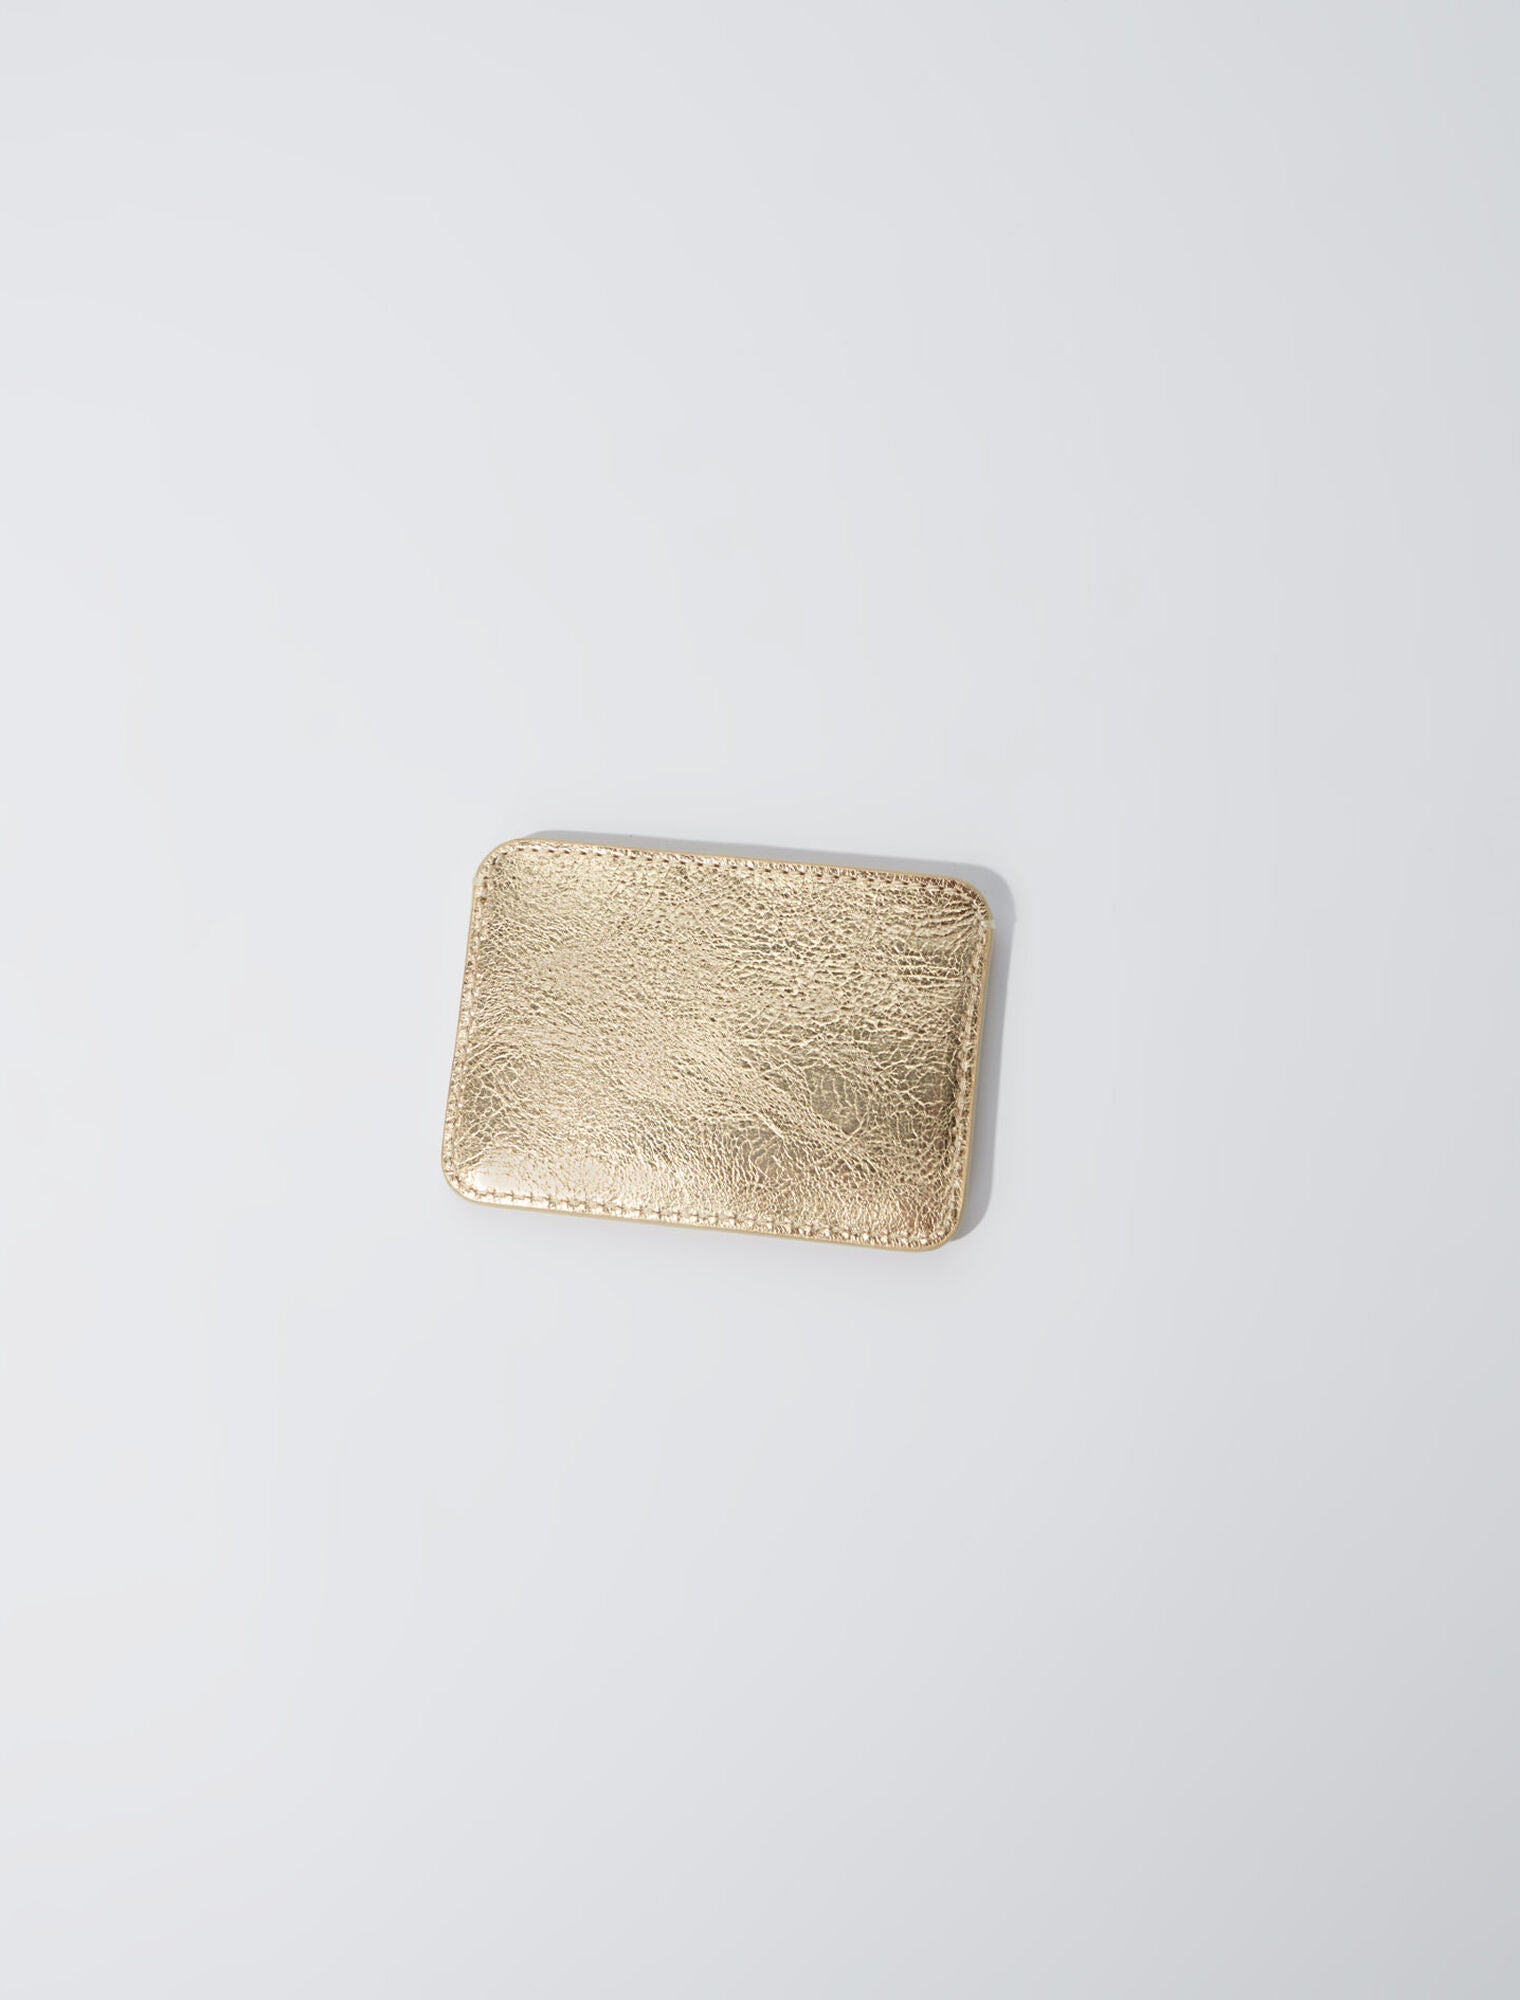 Gold-Crackled leather card holder